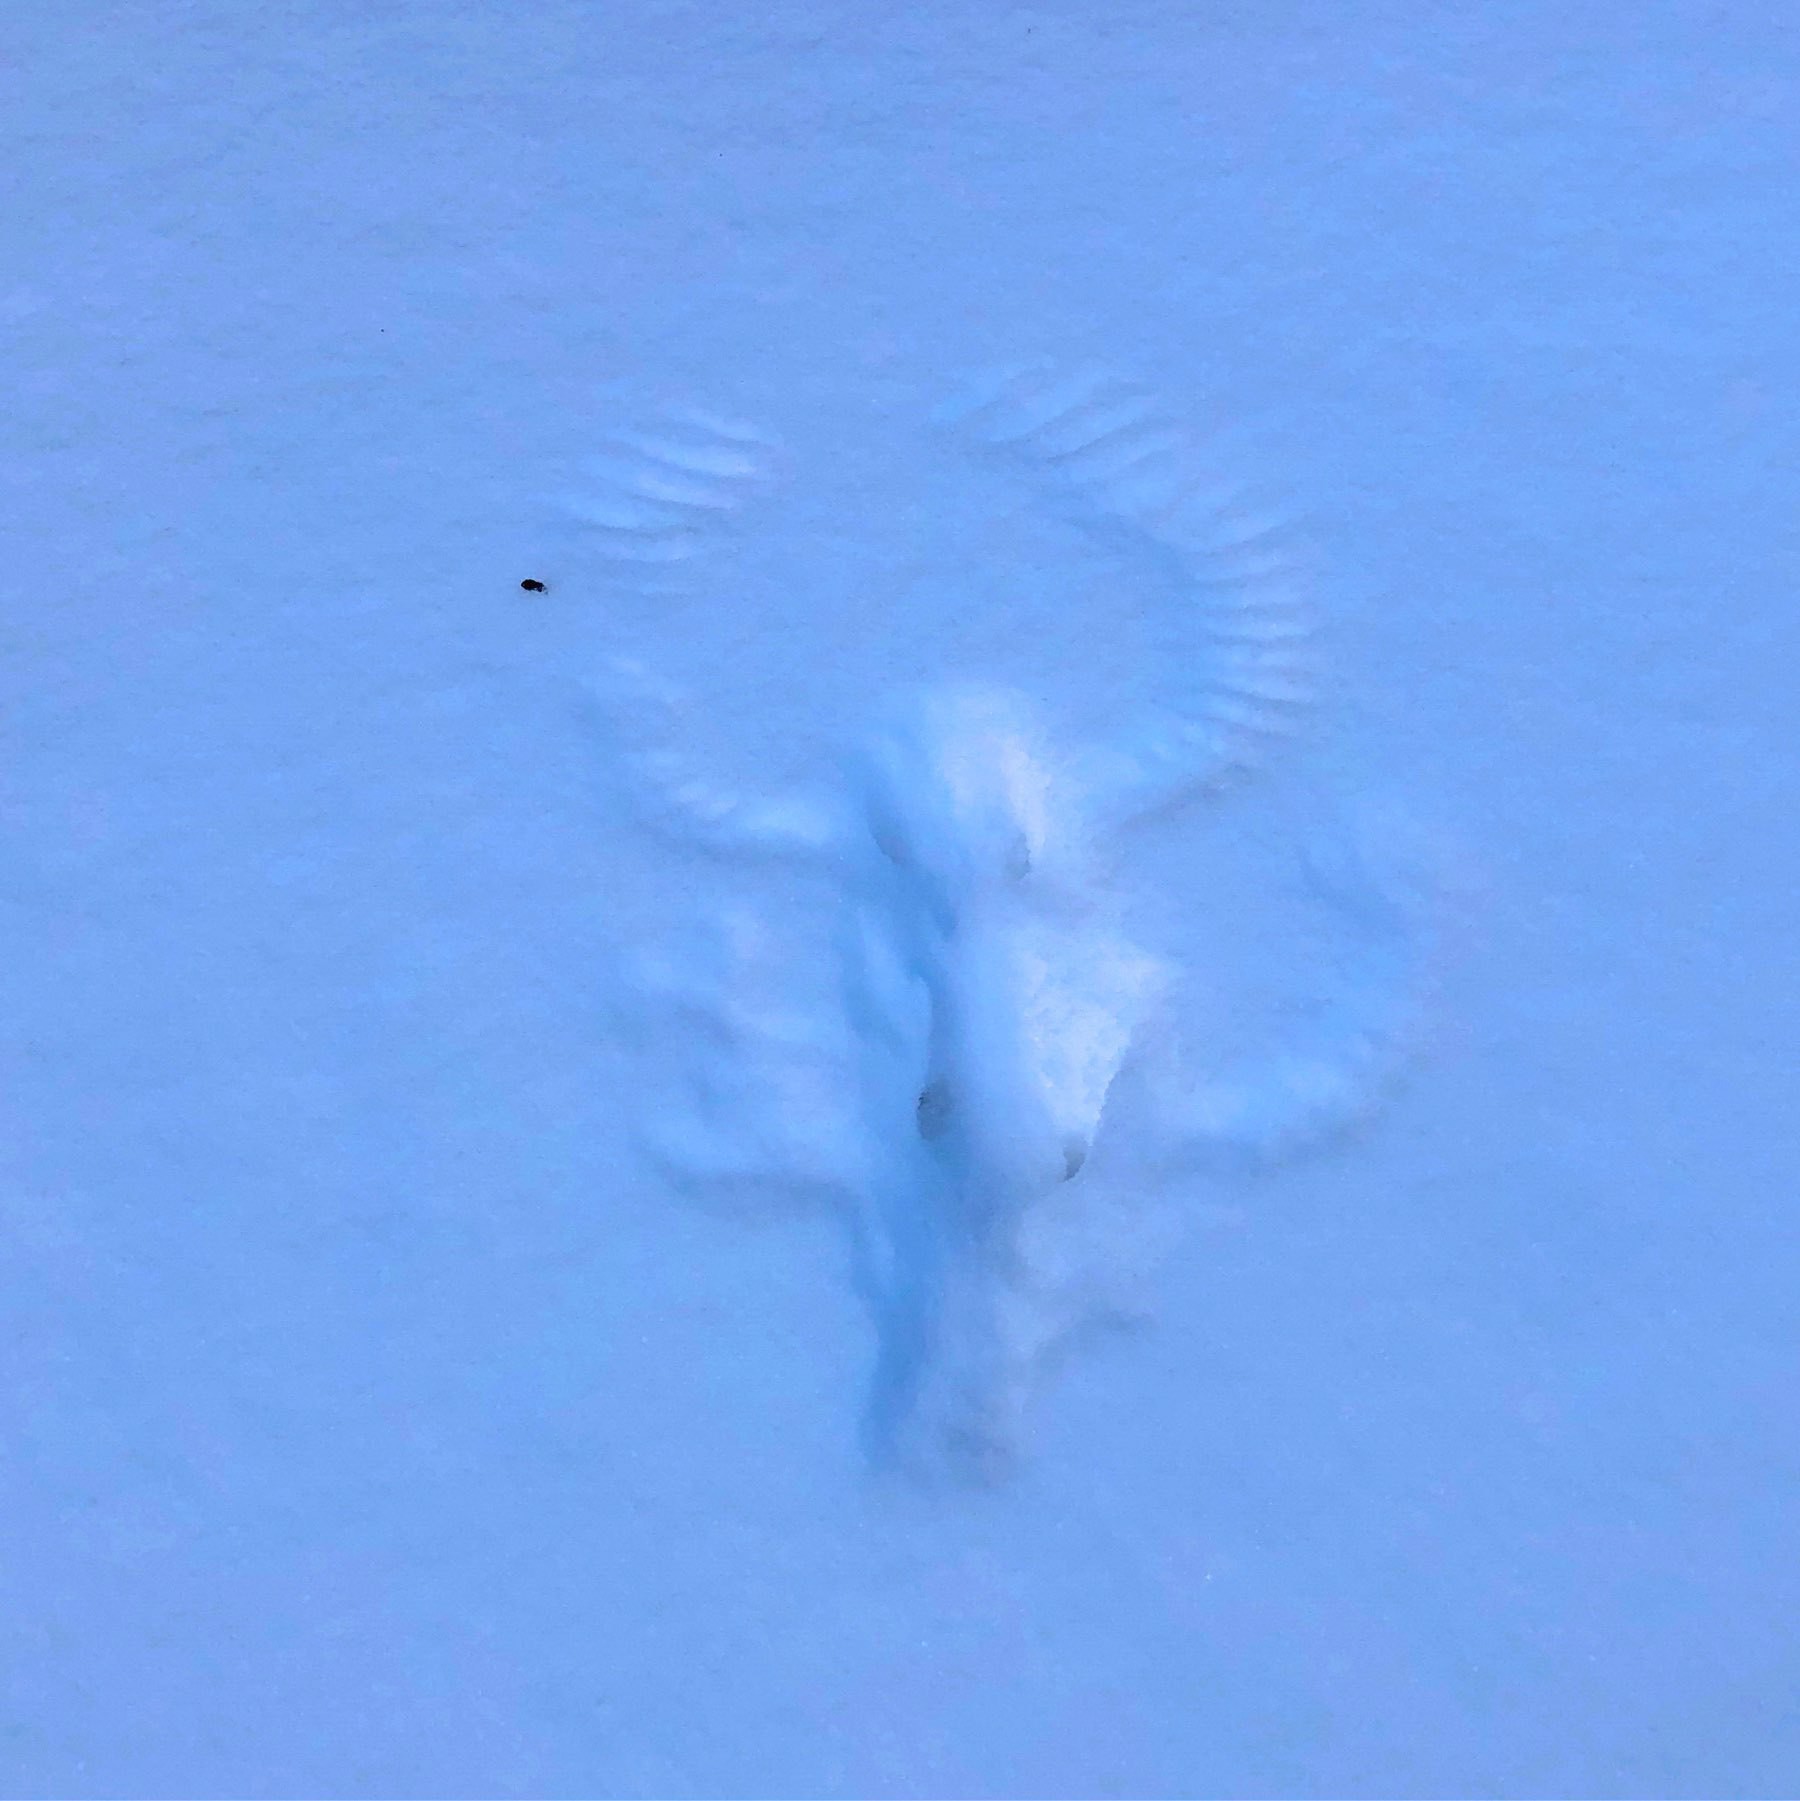 circlular imprint of a bird's wings